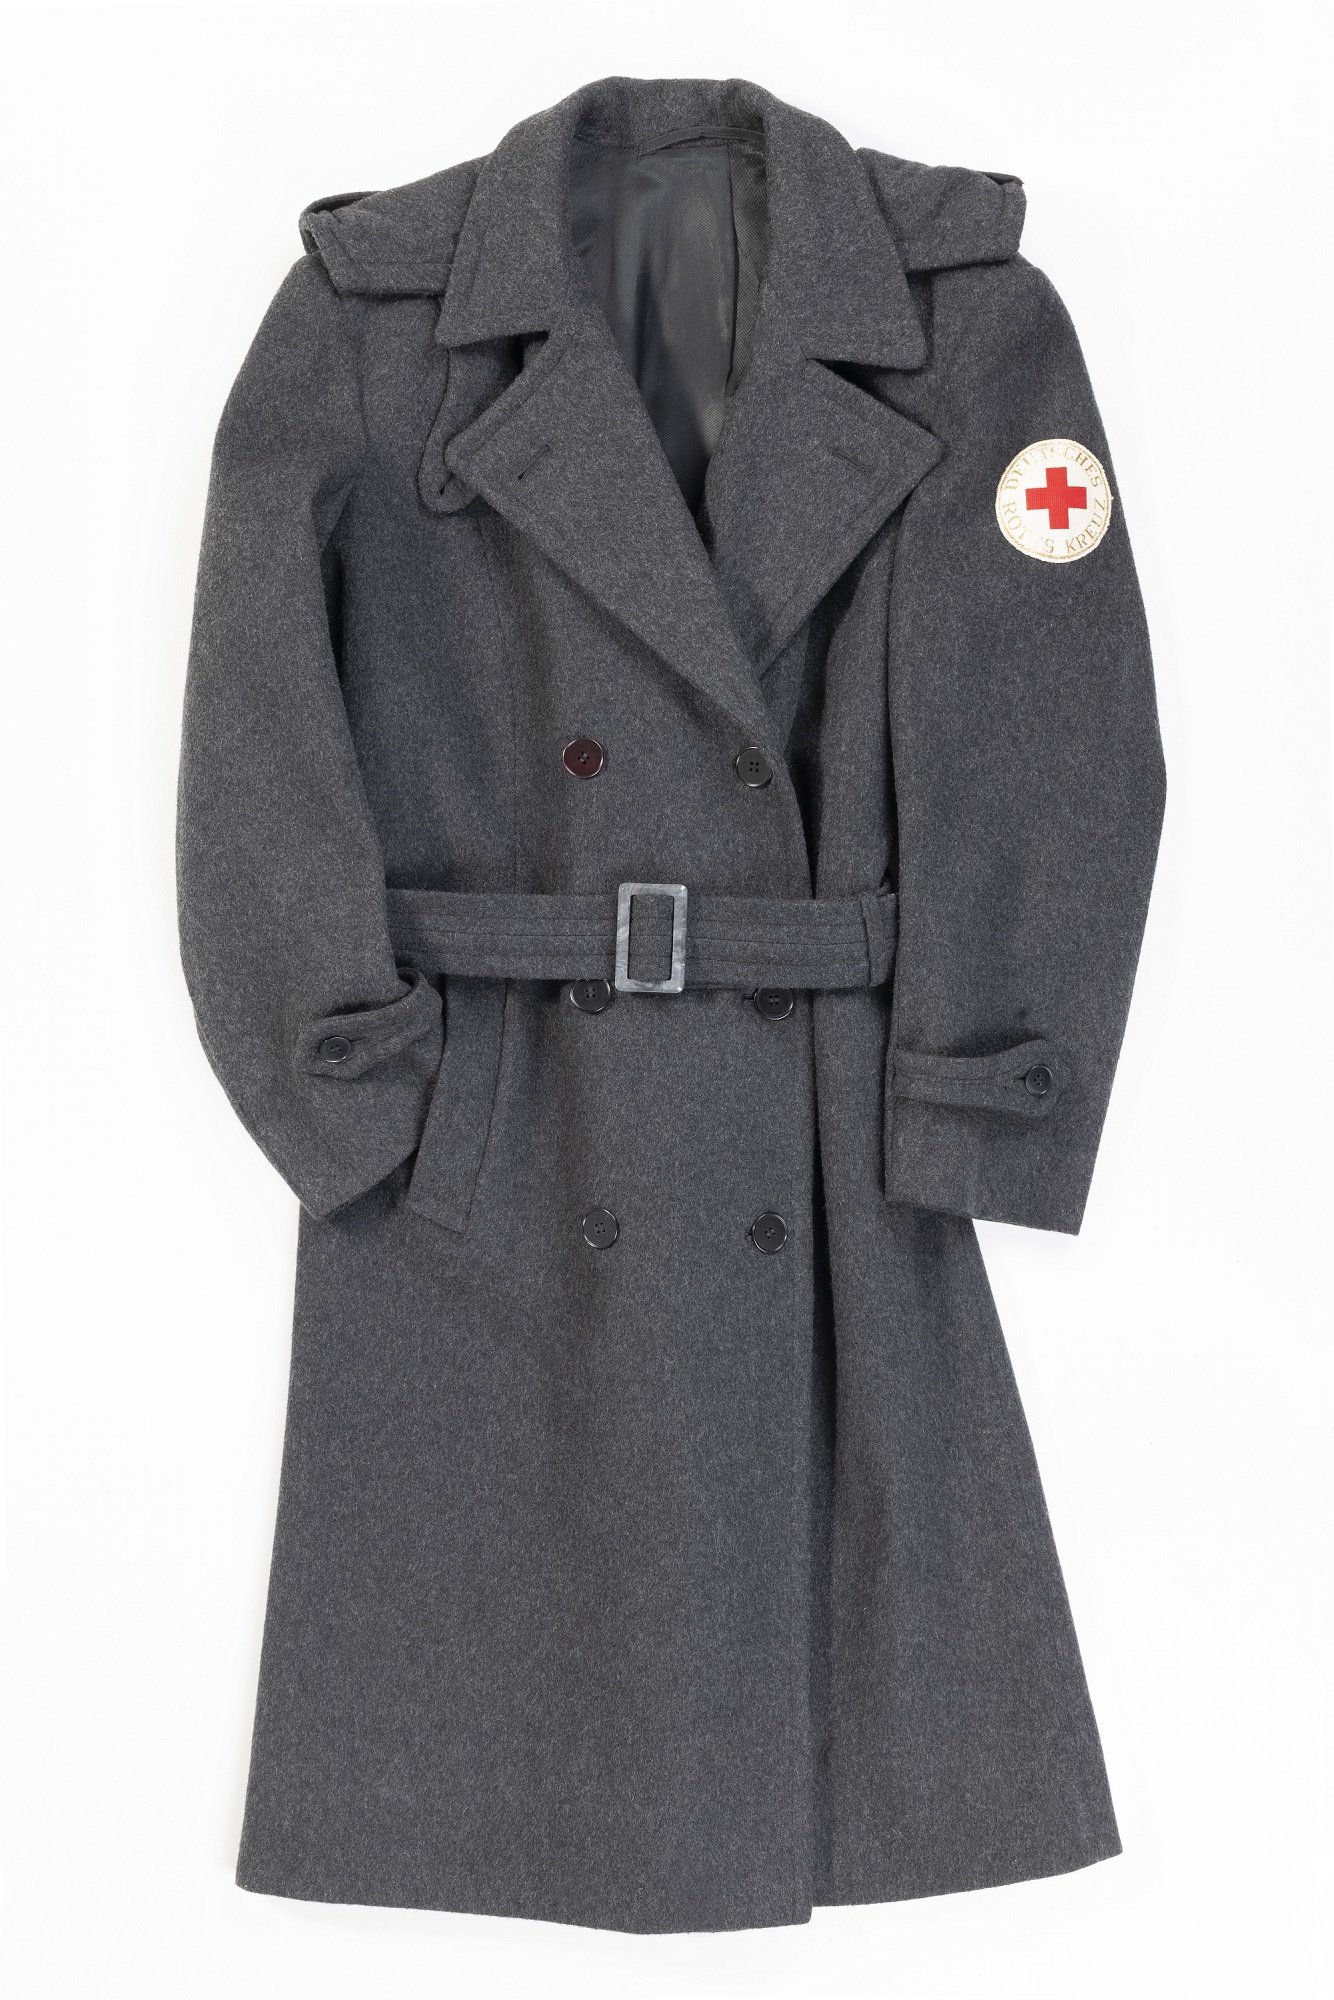 Mantel mit Aufnäher „Deutsches Rotes Kreuz“ (LWL-Psychiatriemuseum Warstein CC BY-NC-SA)